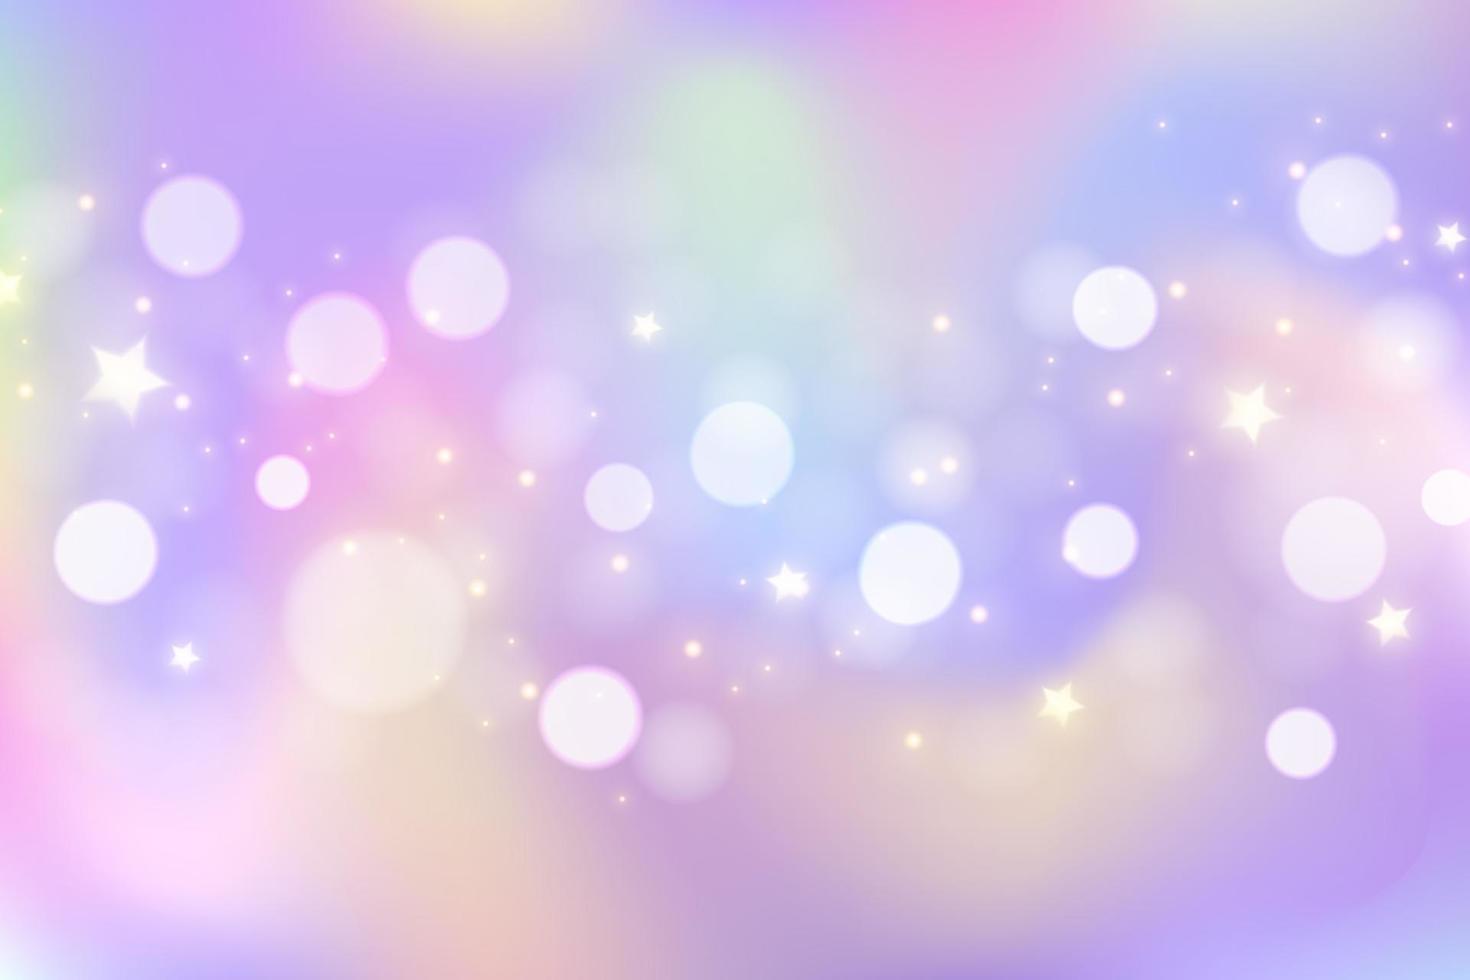 sfondo di unicorno arcobaleno. cielo di colore sfumato pastello con glitter e bokeh. spazio e stelle magiche della galassia. modello astratto di vettore. vettore